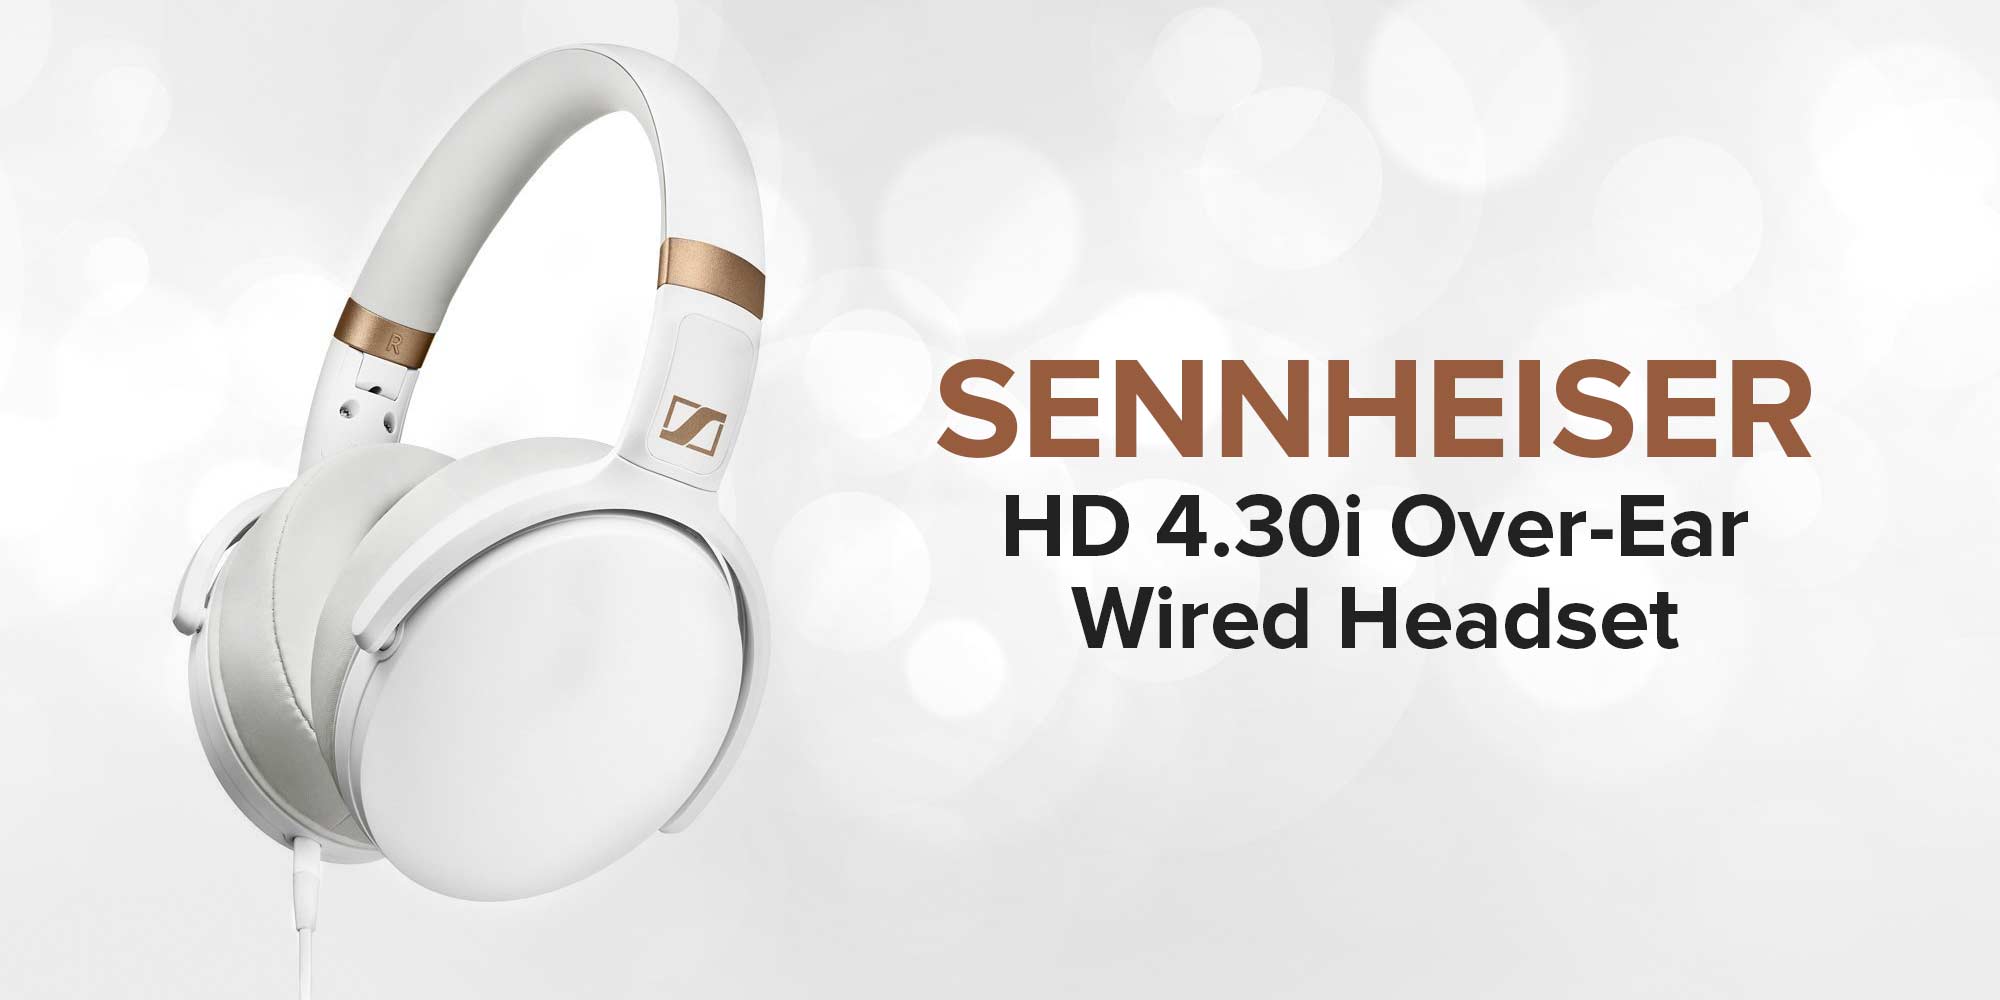 Sennheiser HD 4.30i Over-Ear Headphones Wired Stereo Music